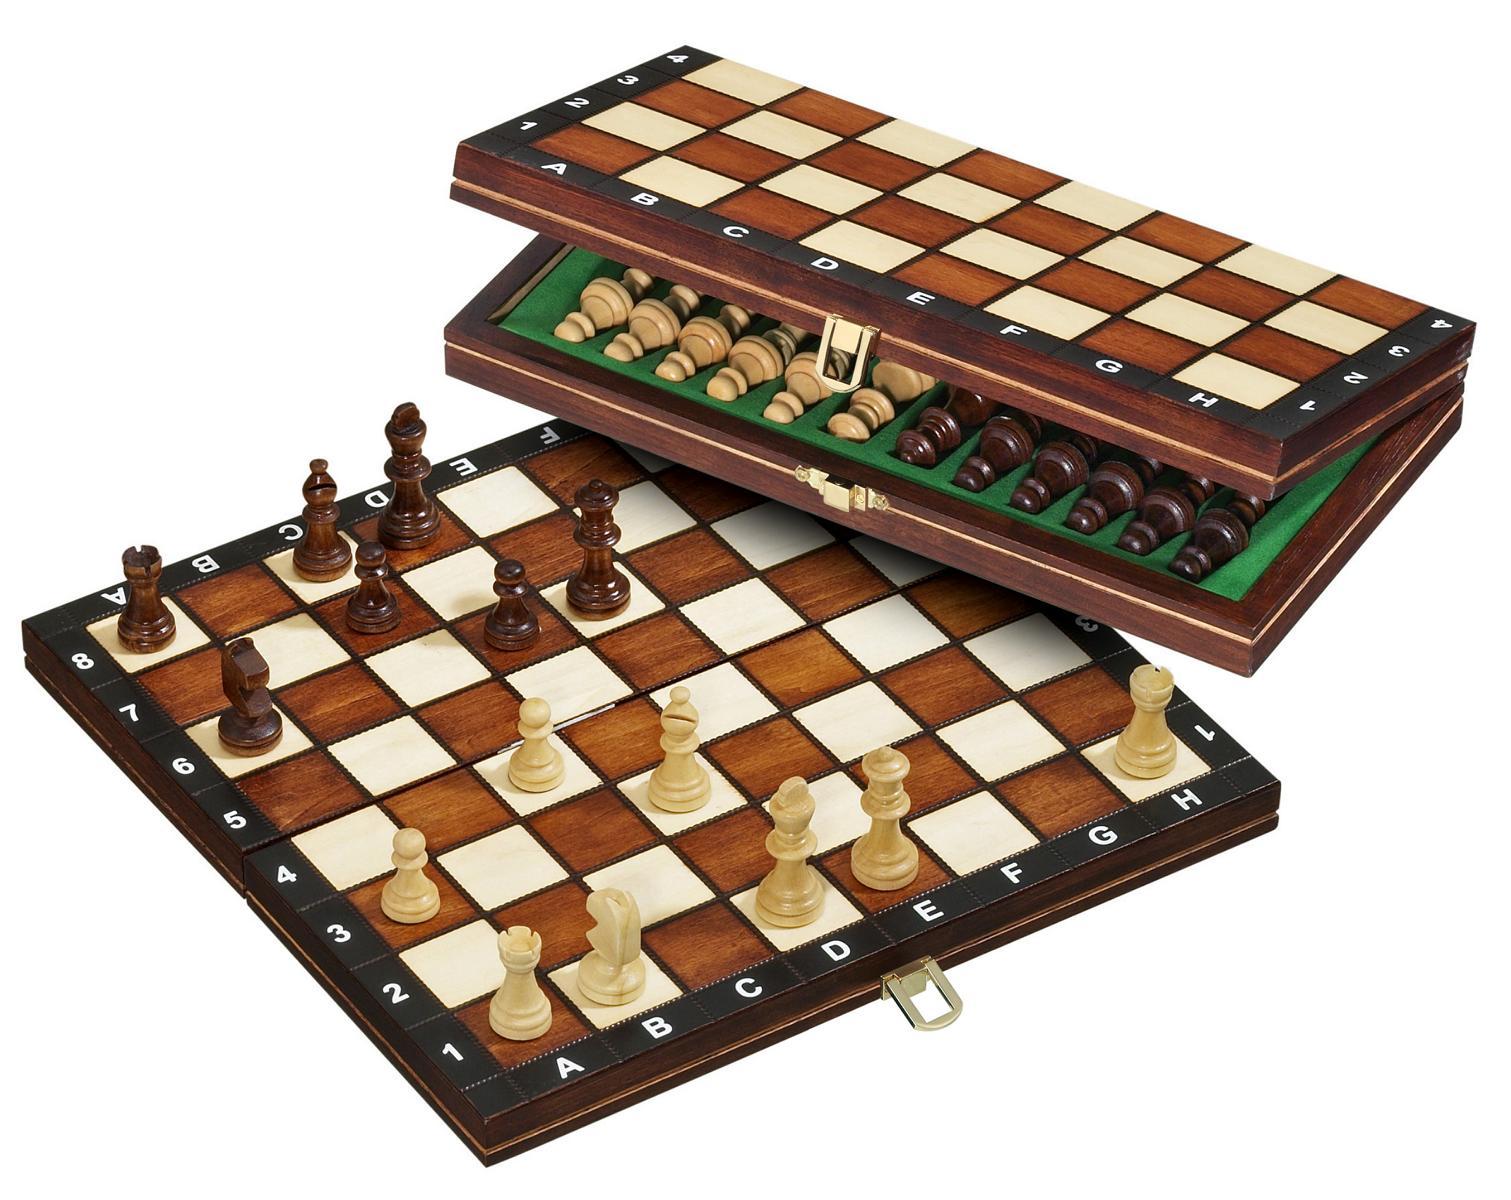 Schachkasette - Reiseschach, magnetisch, 30mm Felder, mit Randbeschriftung